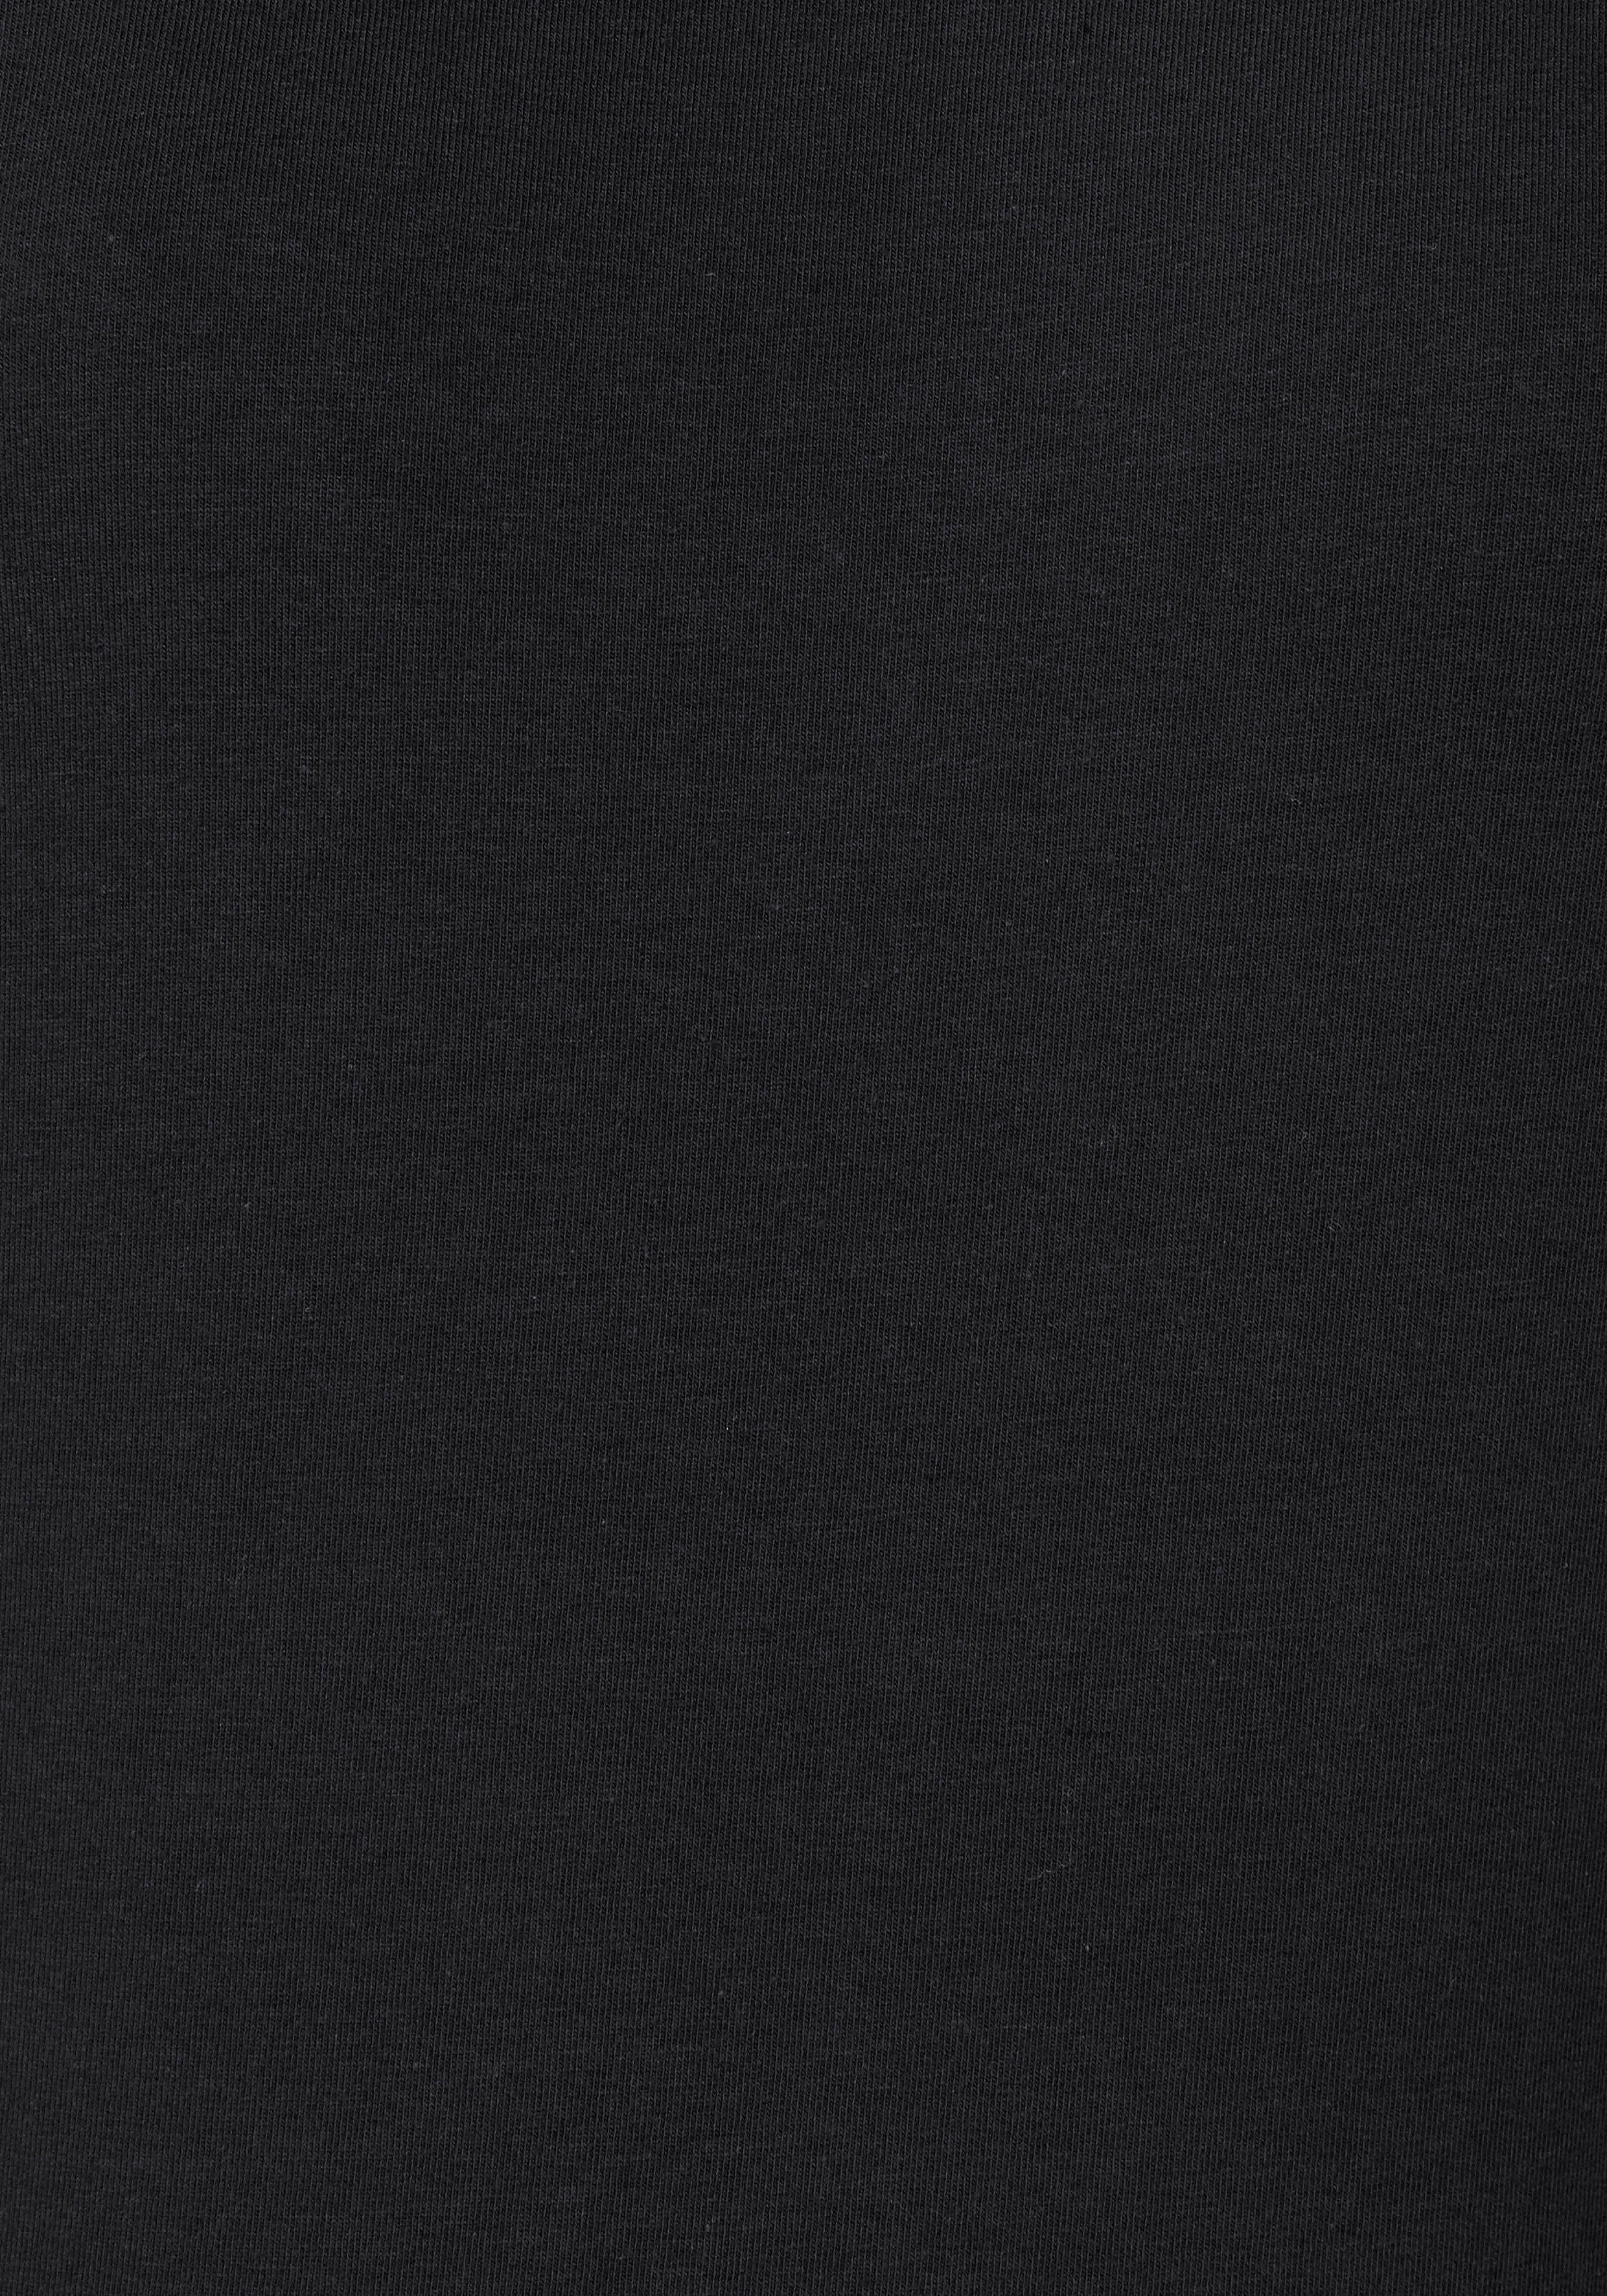 Vivance schwarz, (2er-Pack) weiß elastischer Kurzarmshirt Baumwoll-Qualität aus